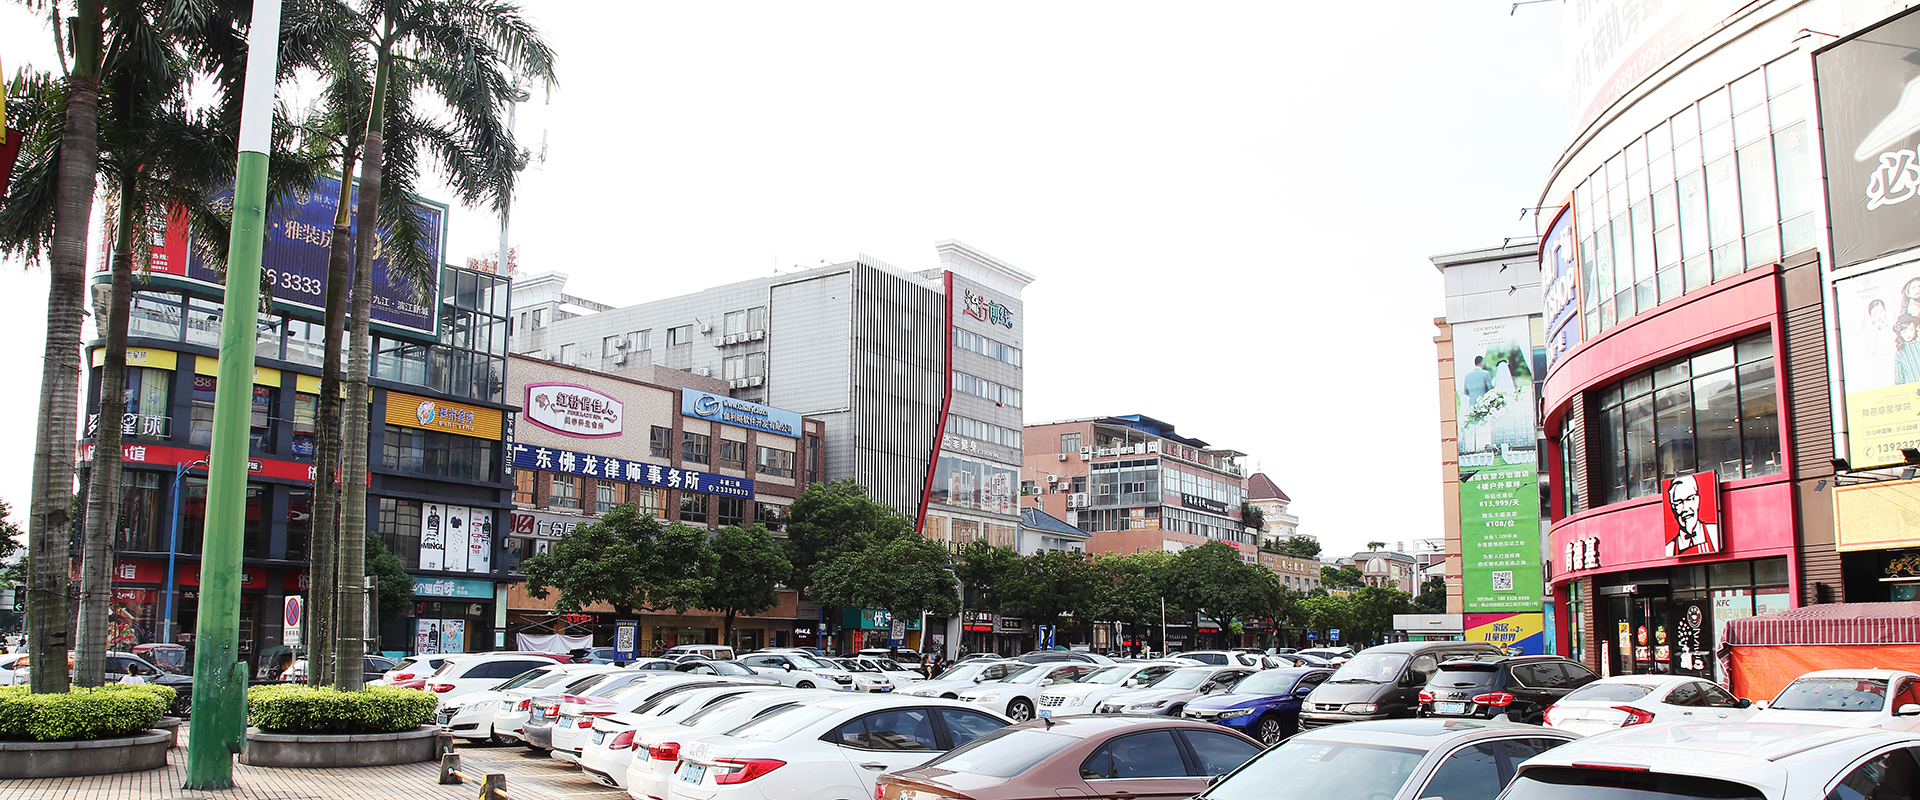 广东顺德佛龙律师事务所周边配套大型停车场